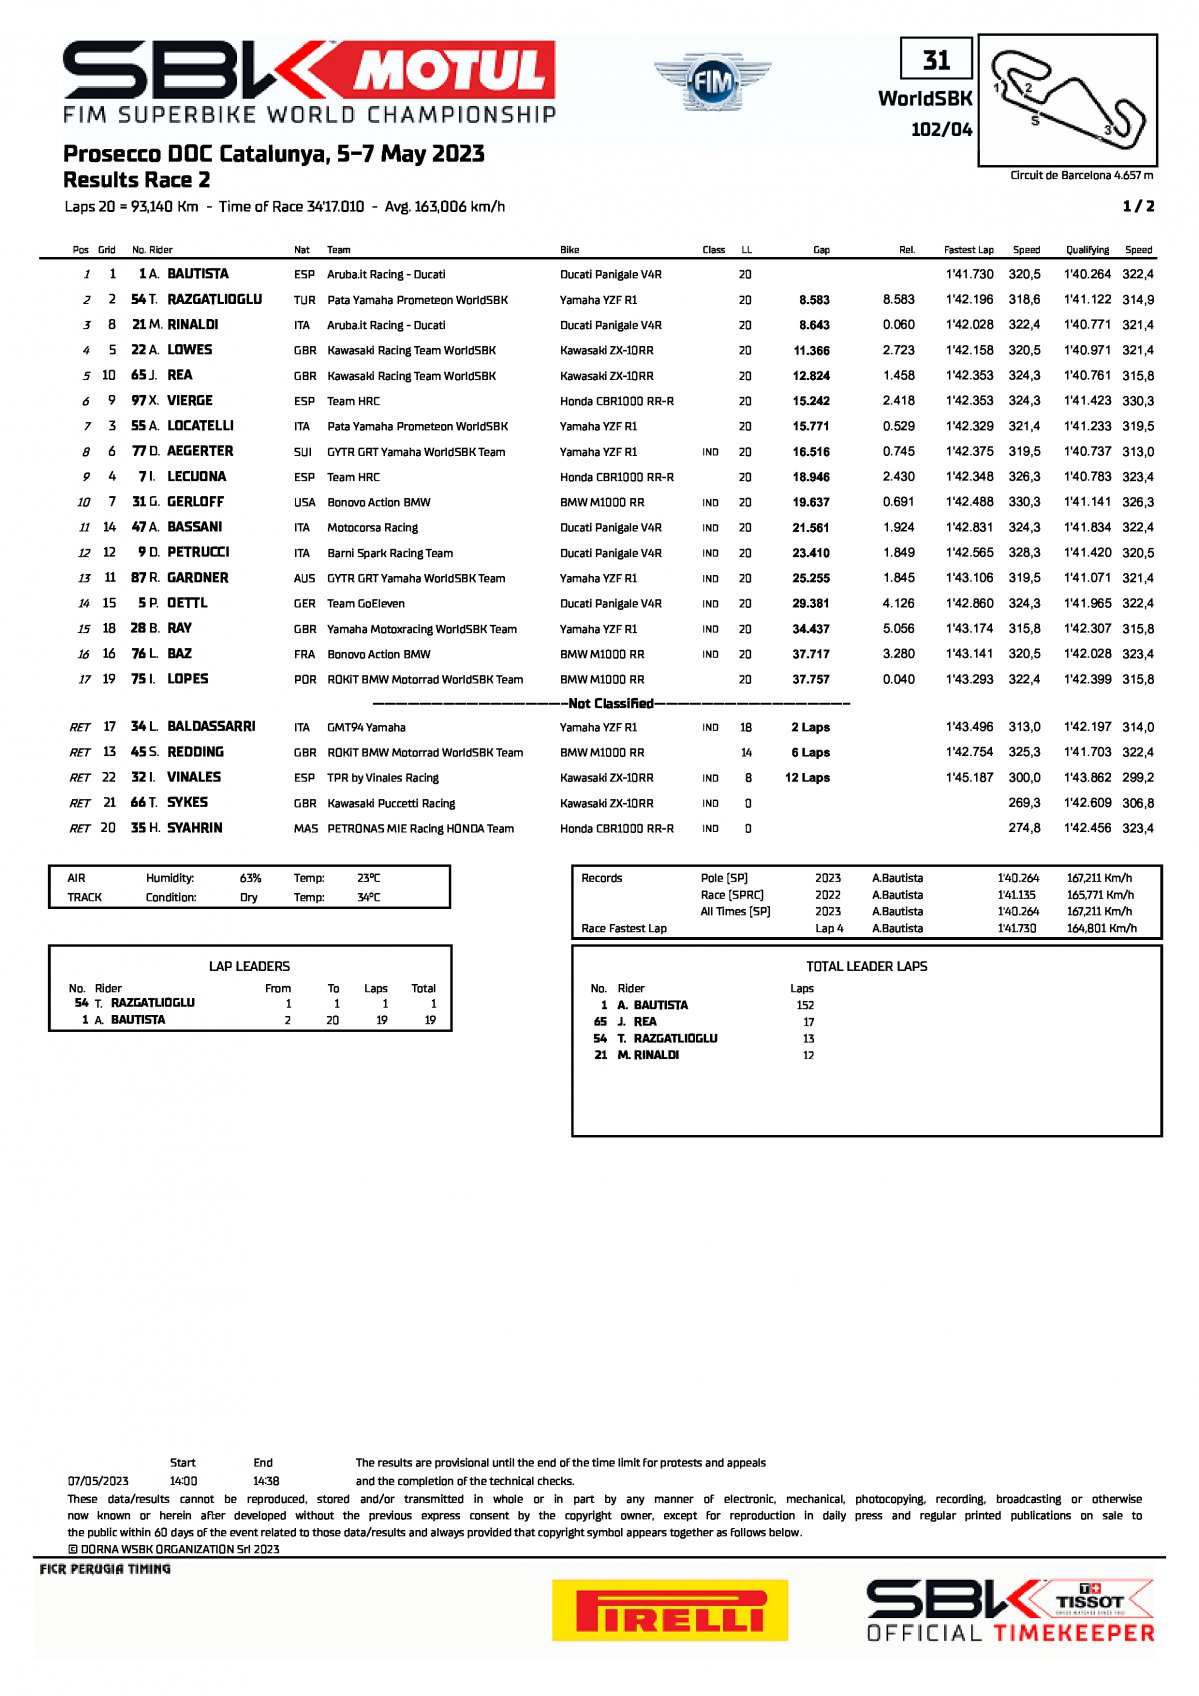 Результаты 2 гонки CATWorldSBK, WSBK (7/05/2023)